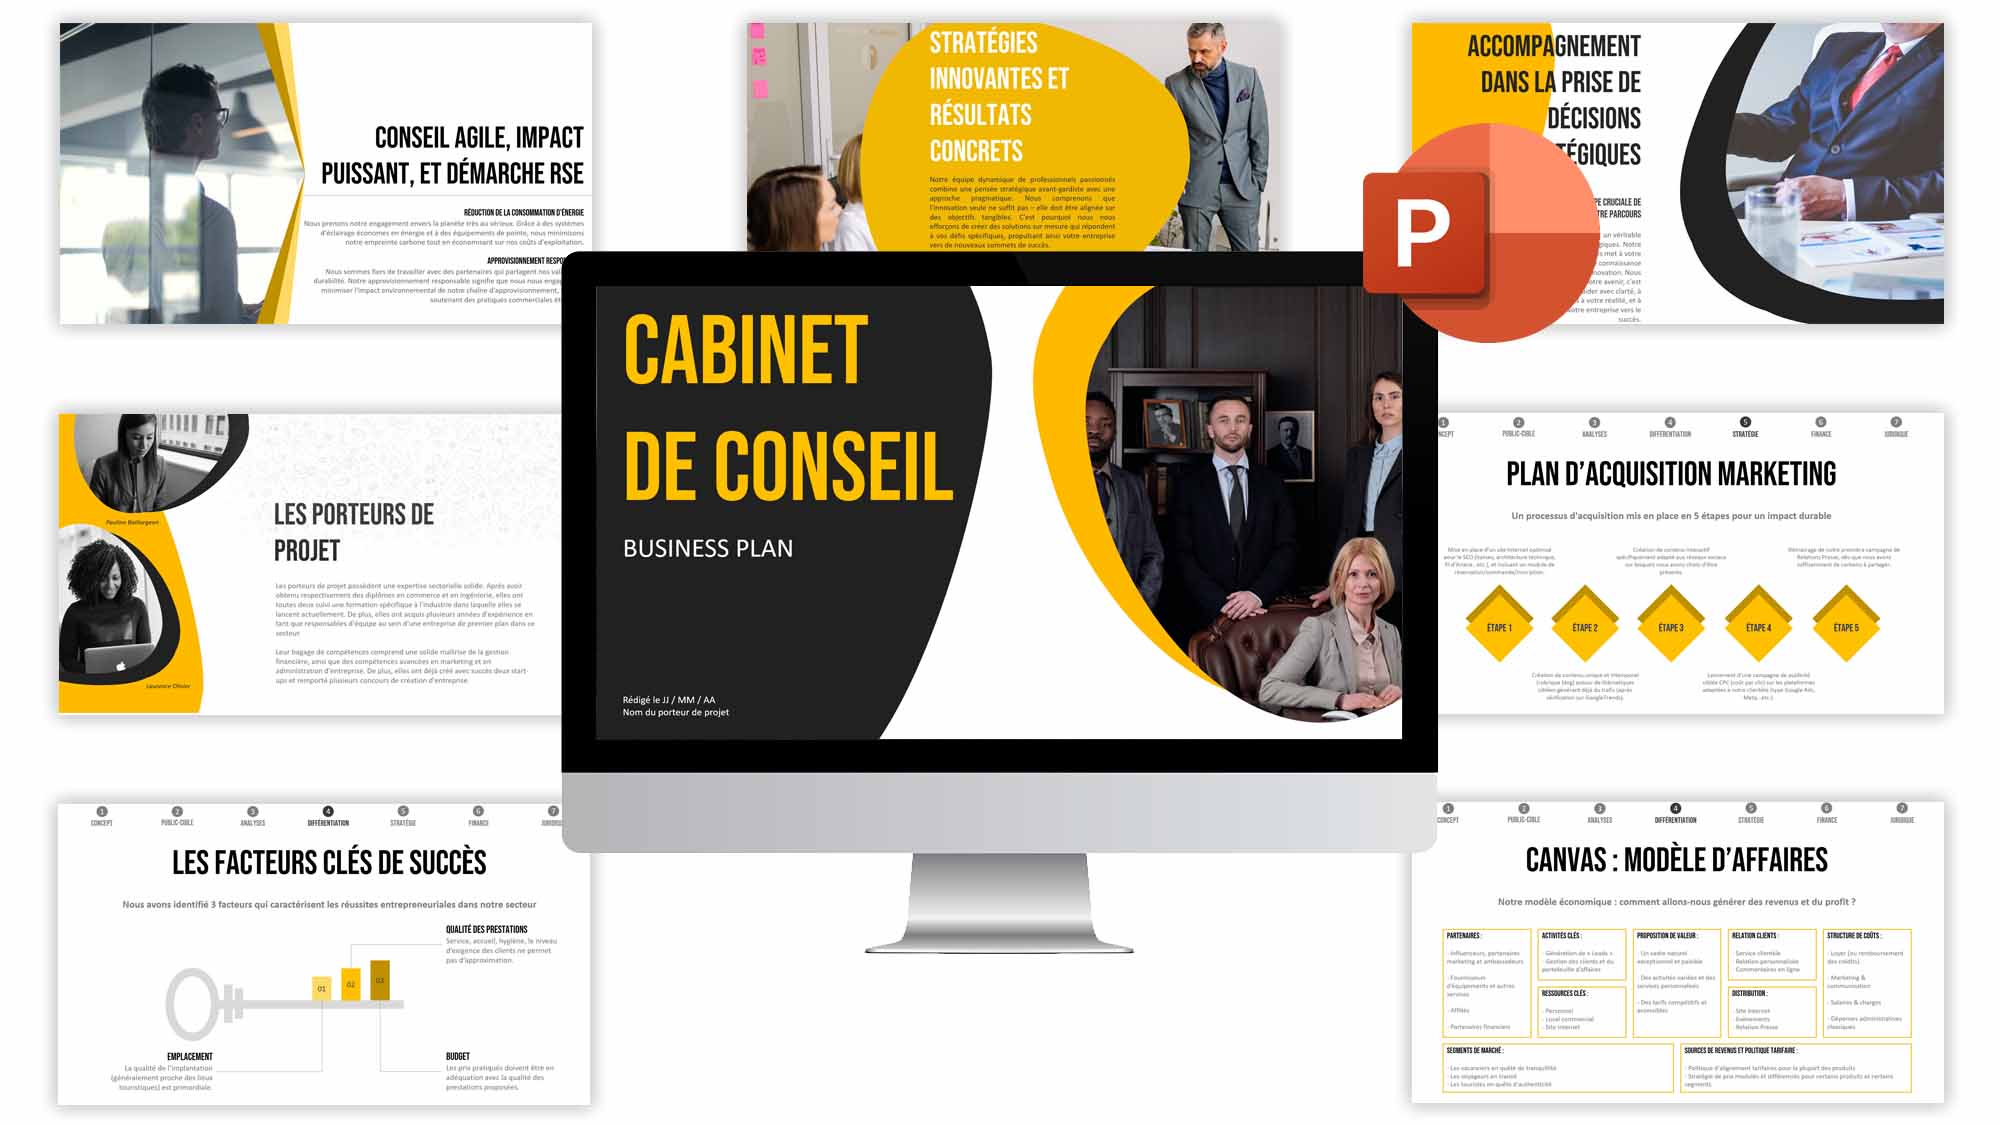 business plan cabinet de conseil pdf